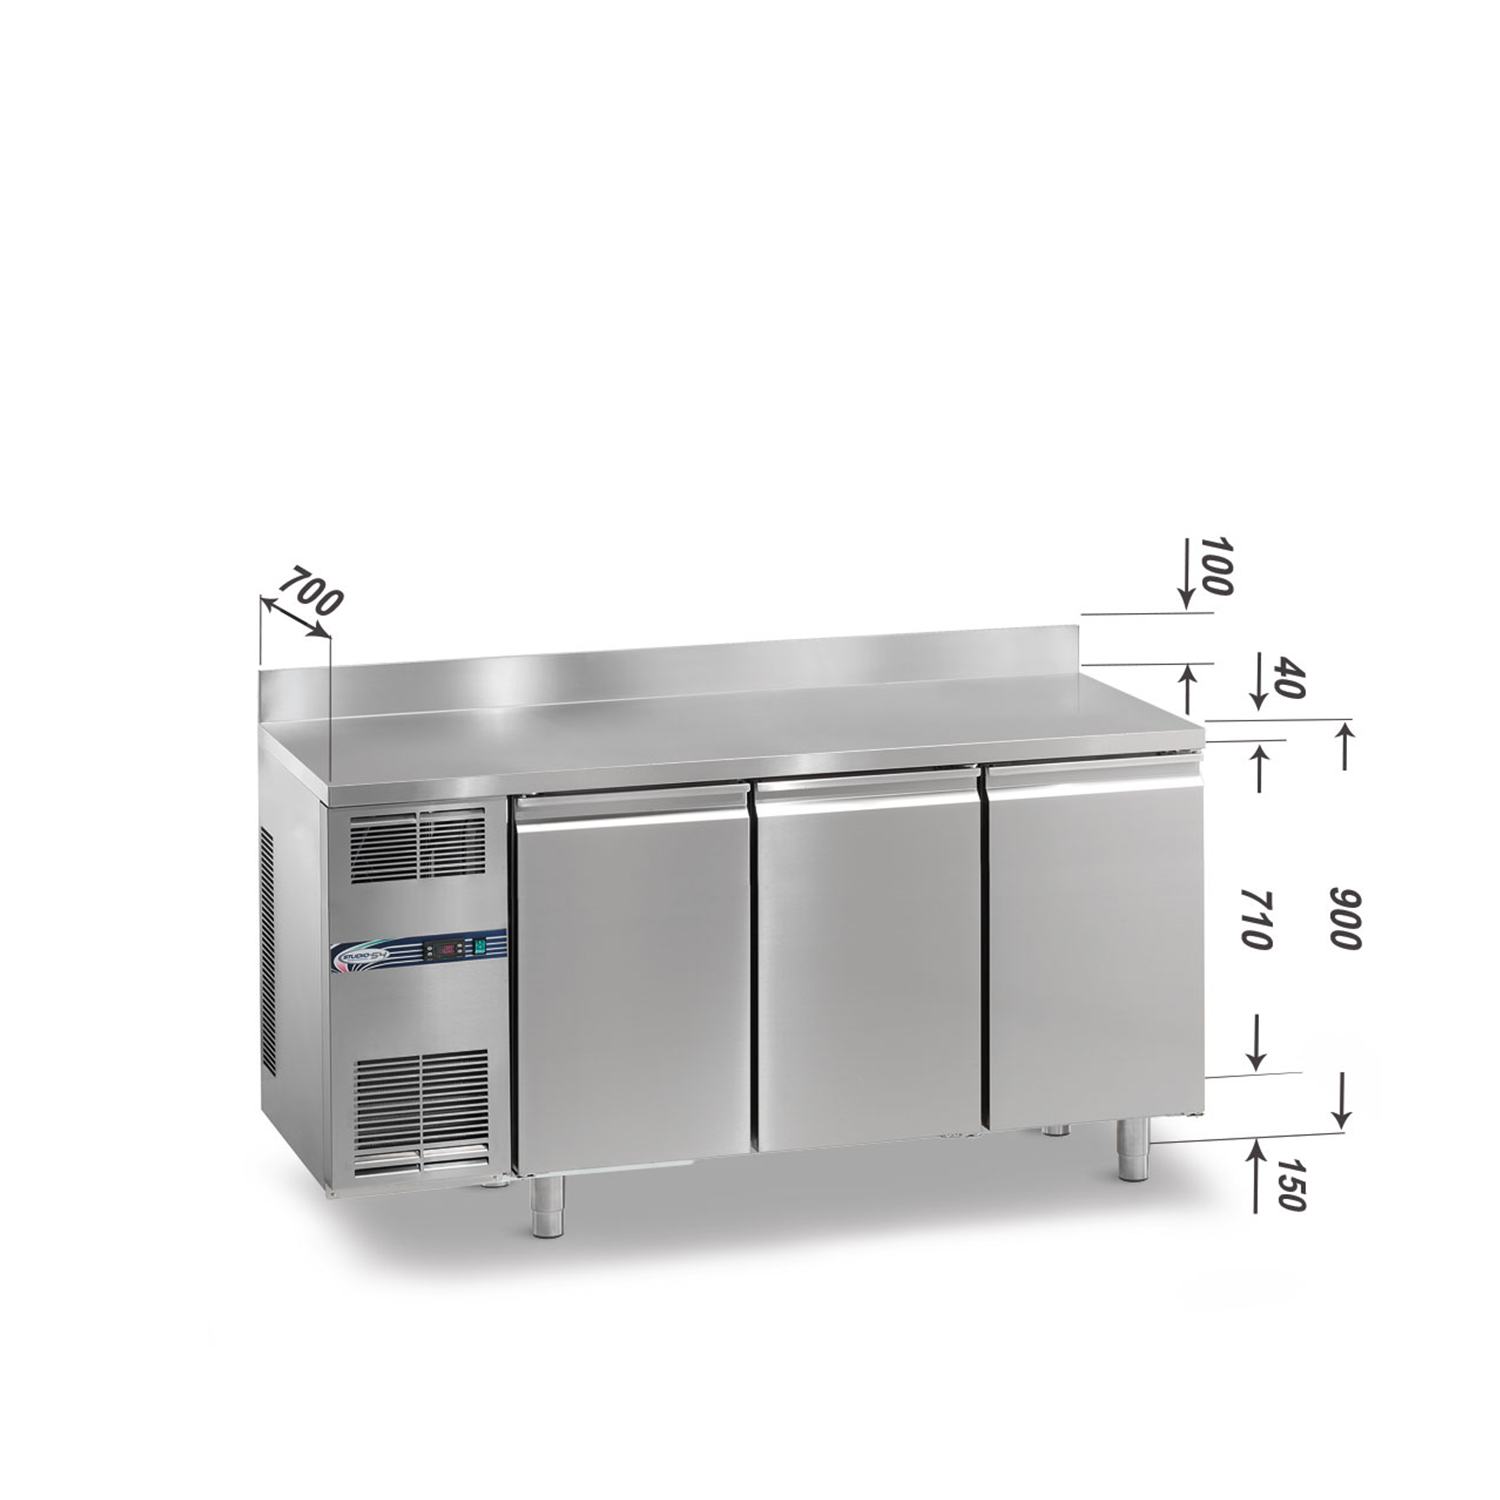 Tiefkühltisch DAIQUIRI Top Line H710 GN 1/1, B 1740  x T 700 x H 900+100 mm, 3 Kühlfächer, Arbeitsplatte mit Aufkantung